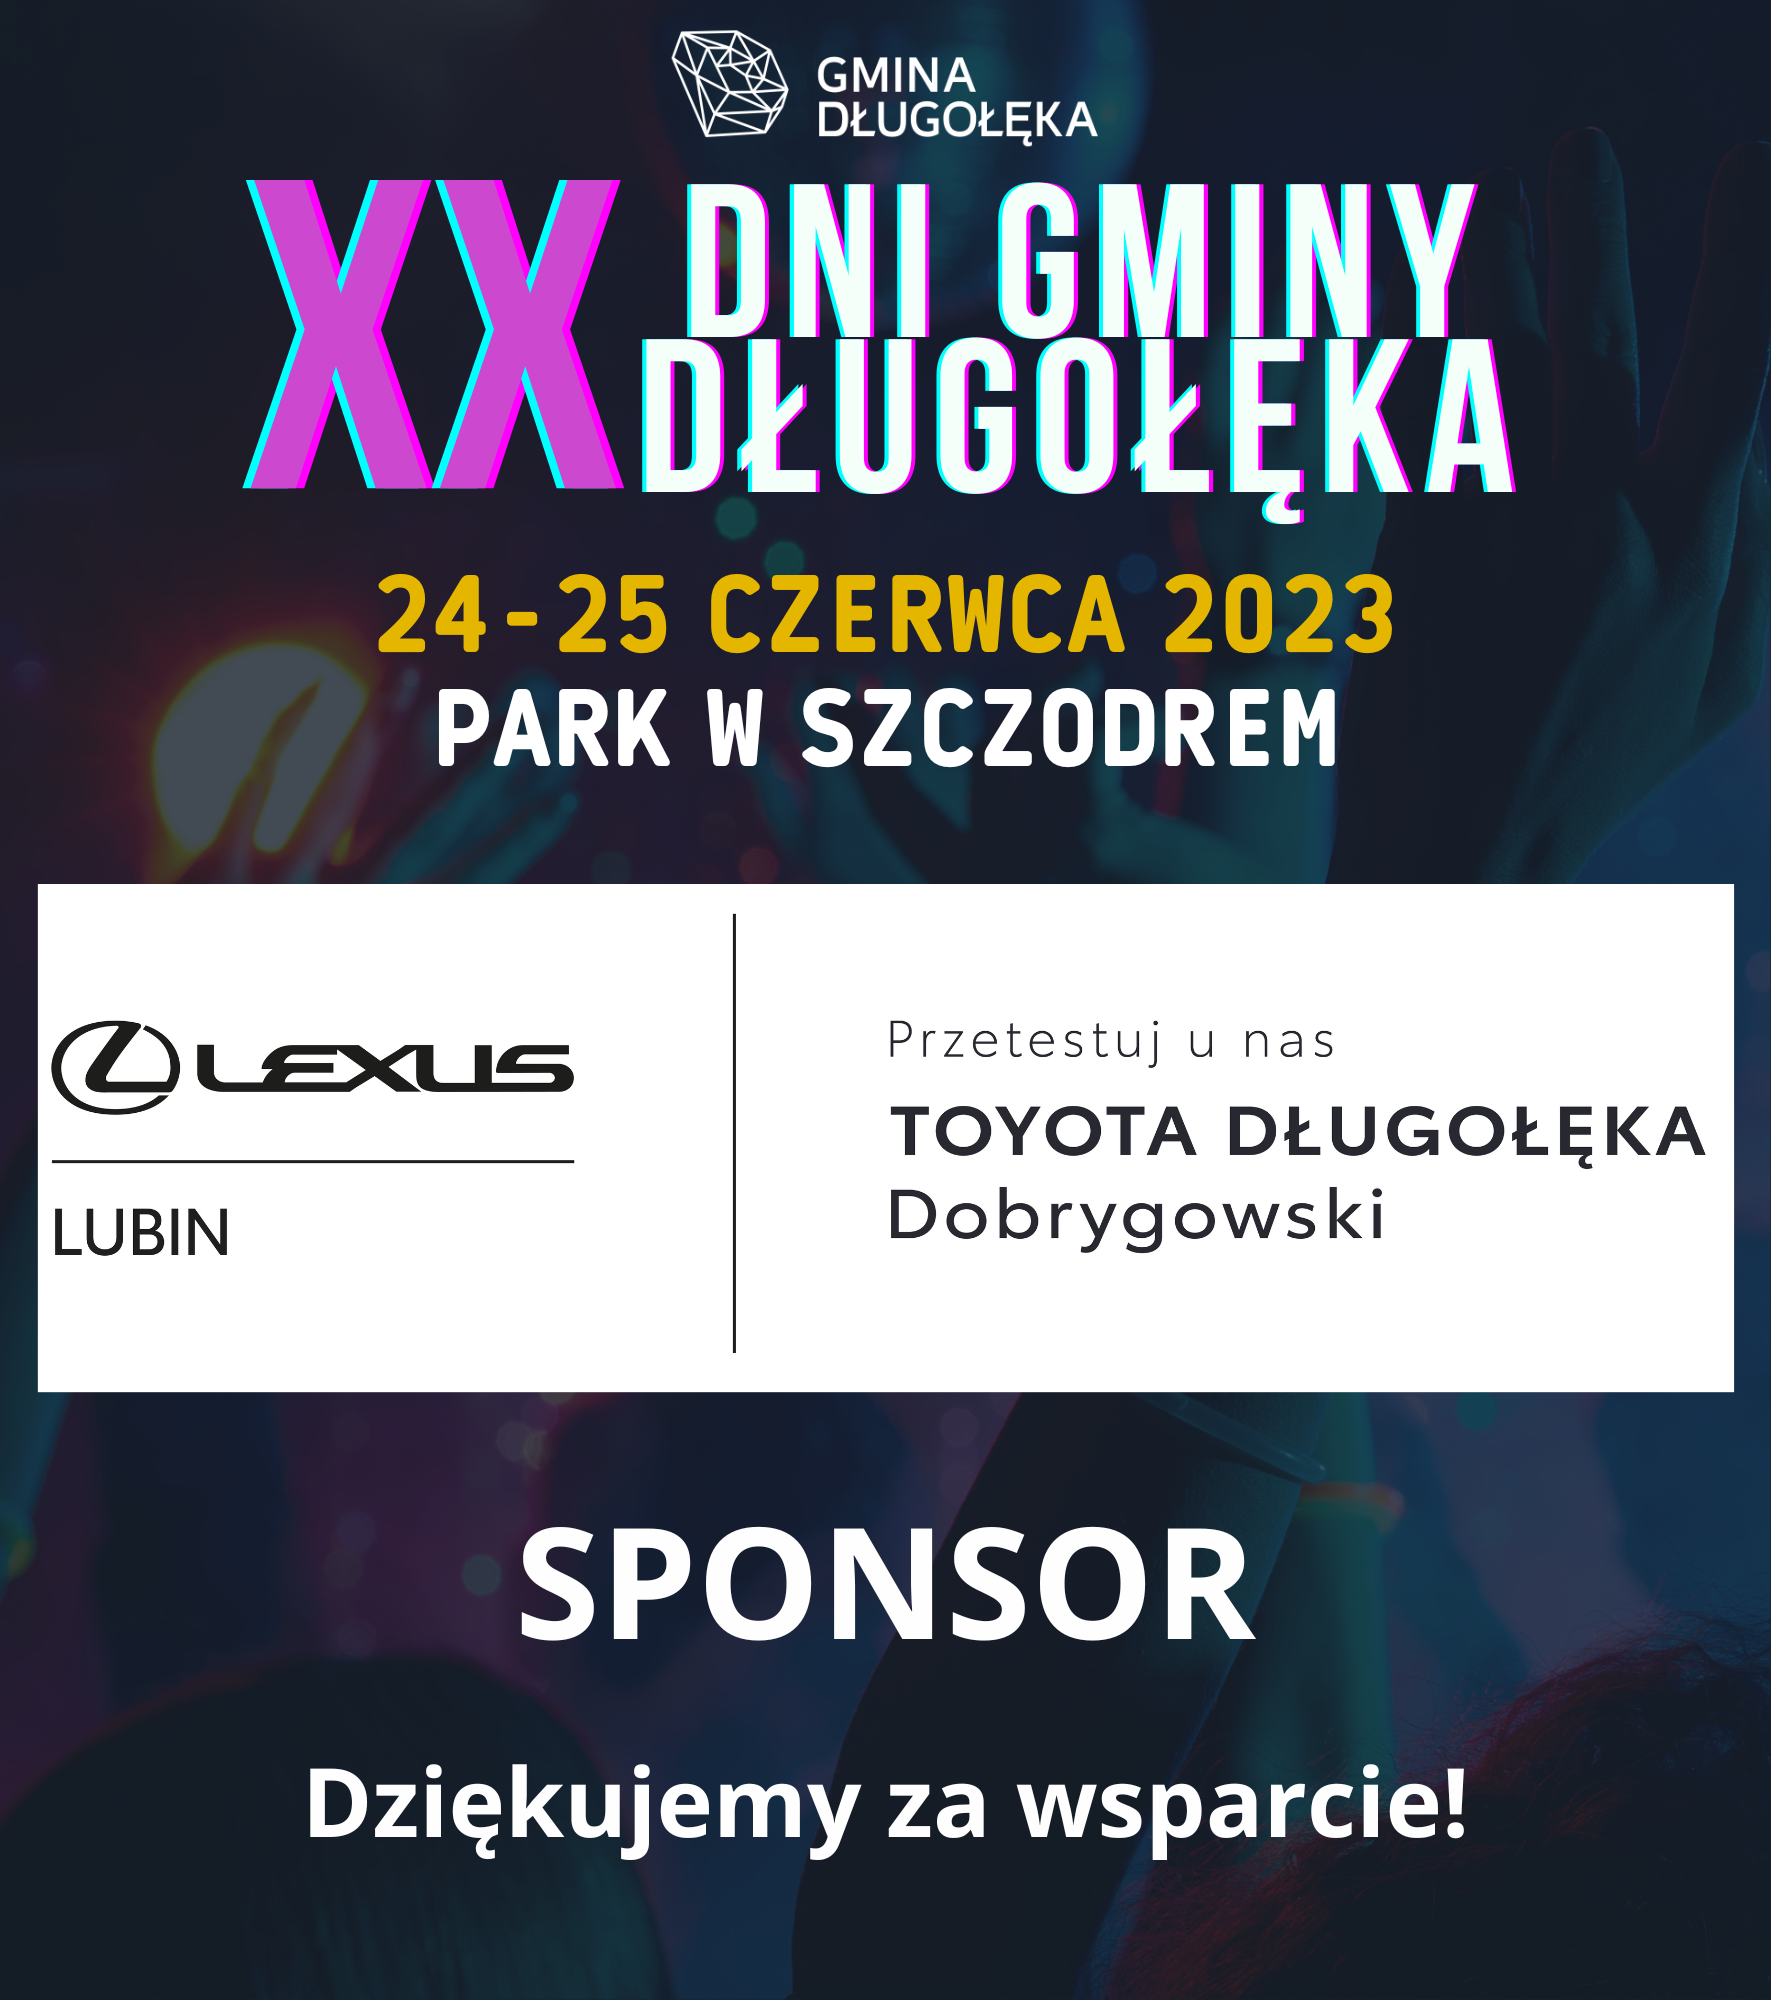 Toyota Dobrygowski sponsorem XX Dni Gminy Długołęka